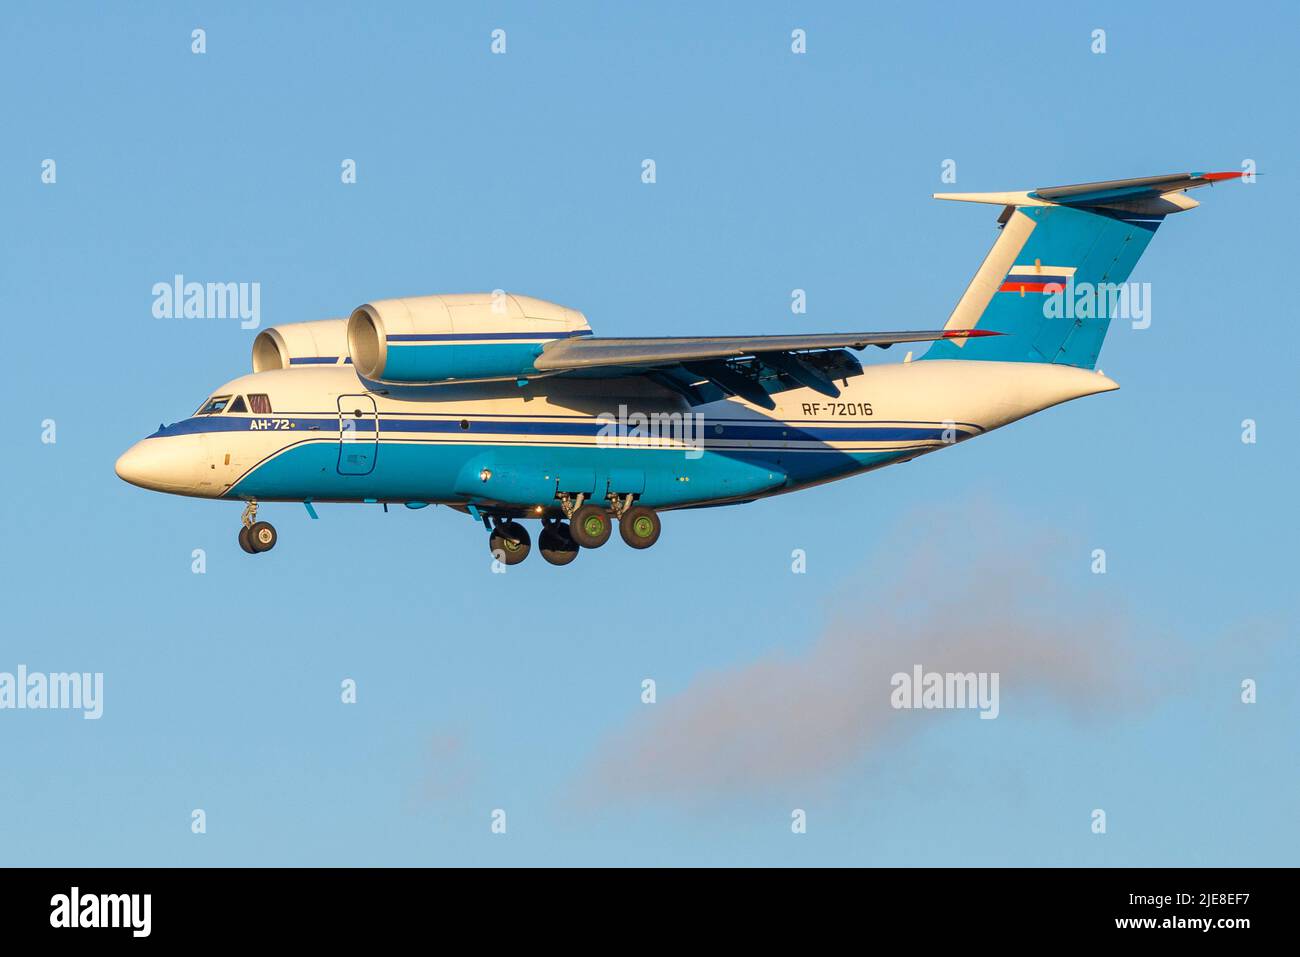 SAN PIETROBURGO, RUSSIA - 25 OTTOBRE 2018: Aereo AN-72 (RF-72016) del servizio di frontiera federale della Russia in volo Foto Stock